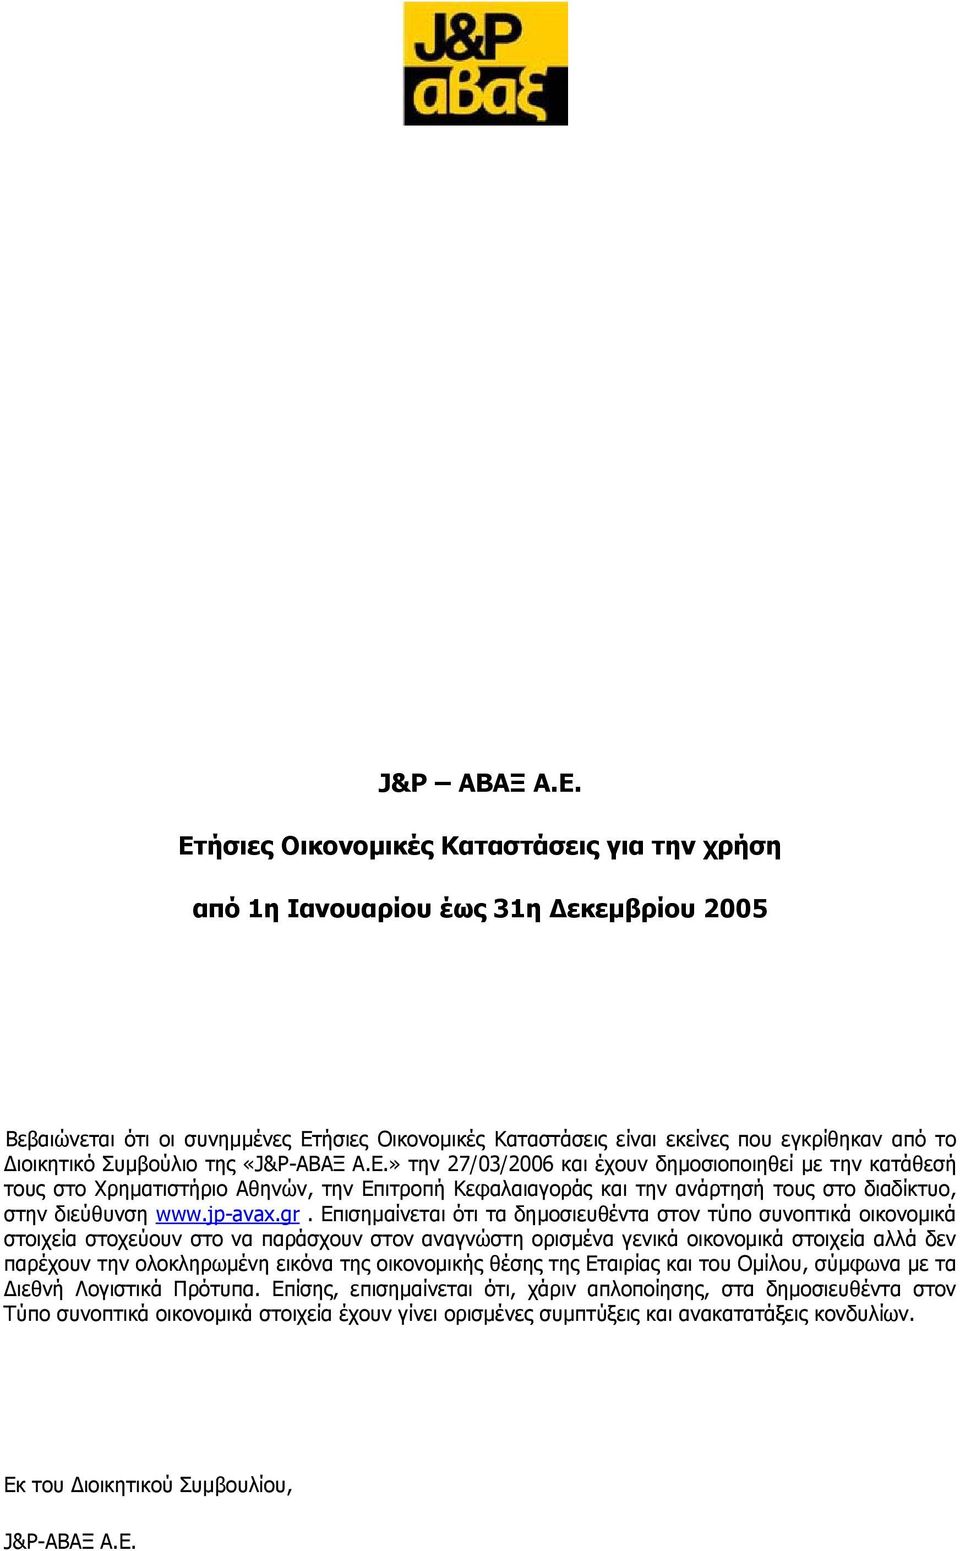 Συµβούλιο της «J&P-ΑΒΑΞ Α.Ε.» την 27/03/2006 και έχουν δηµοσιοποιηθεί µε την κατάθεσή τους στο Χρηµατιστήριο Αθηνών, την Επιτροπή Κεφαλαιαγοράς και την ανάρτησή τους στο διαδίκτυο, στην διεύθυνση www.